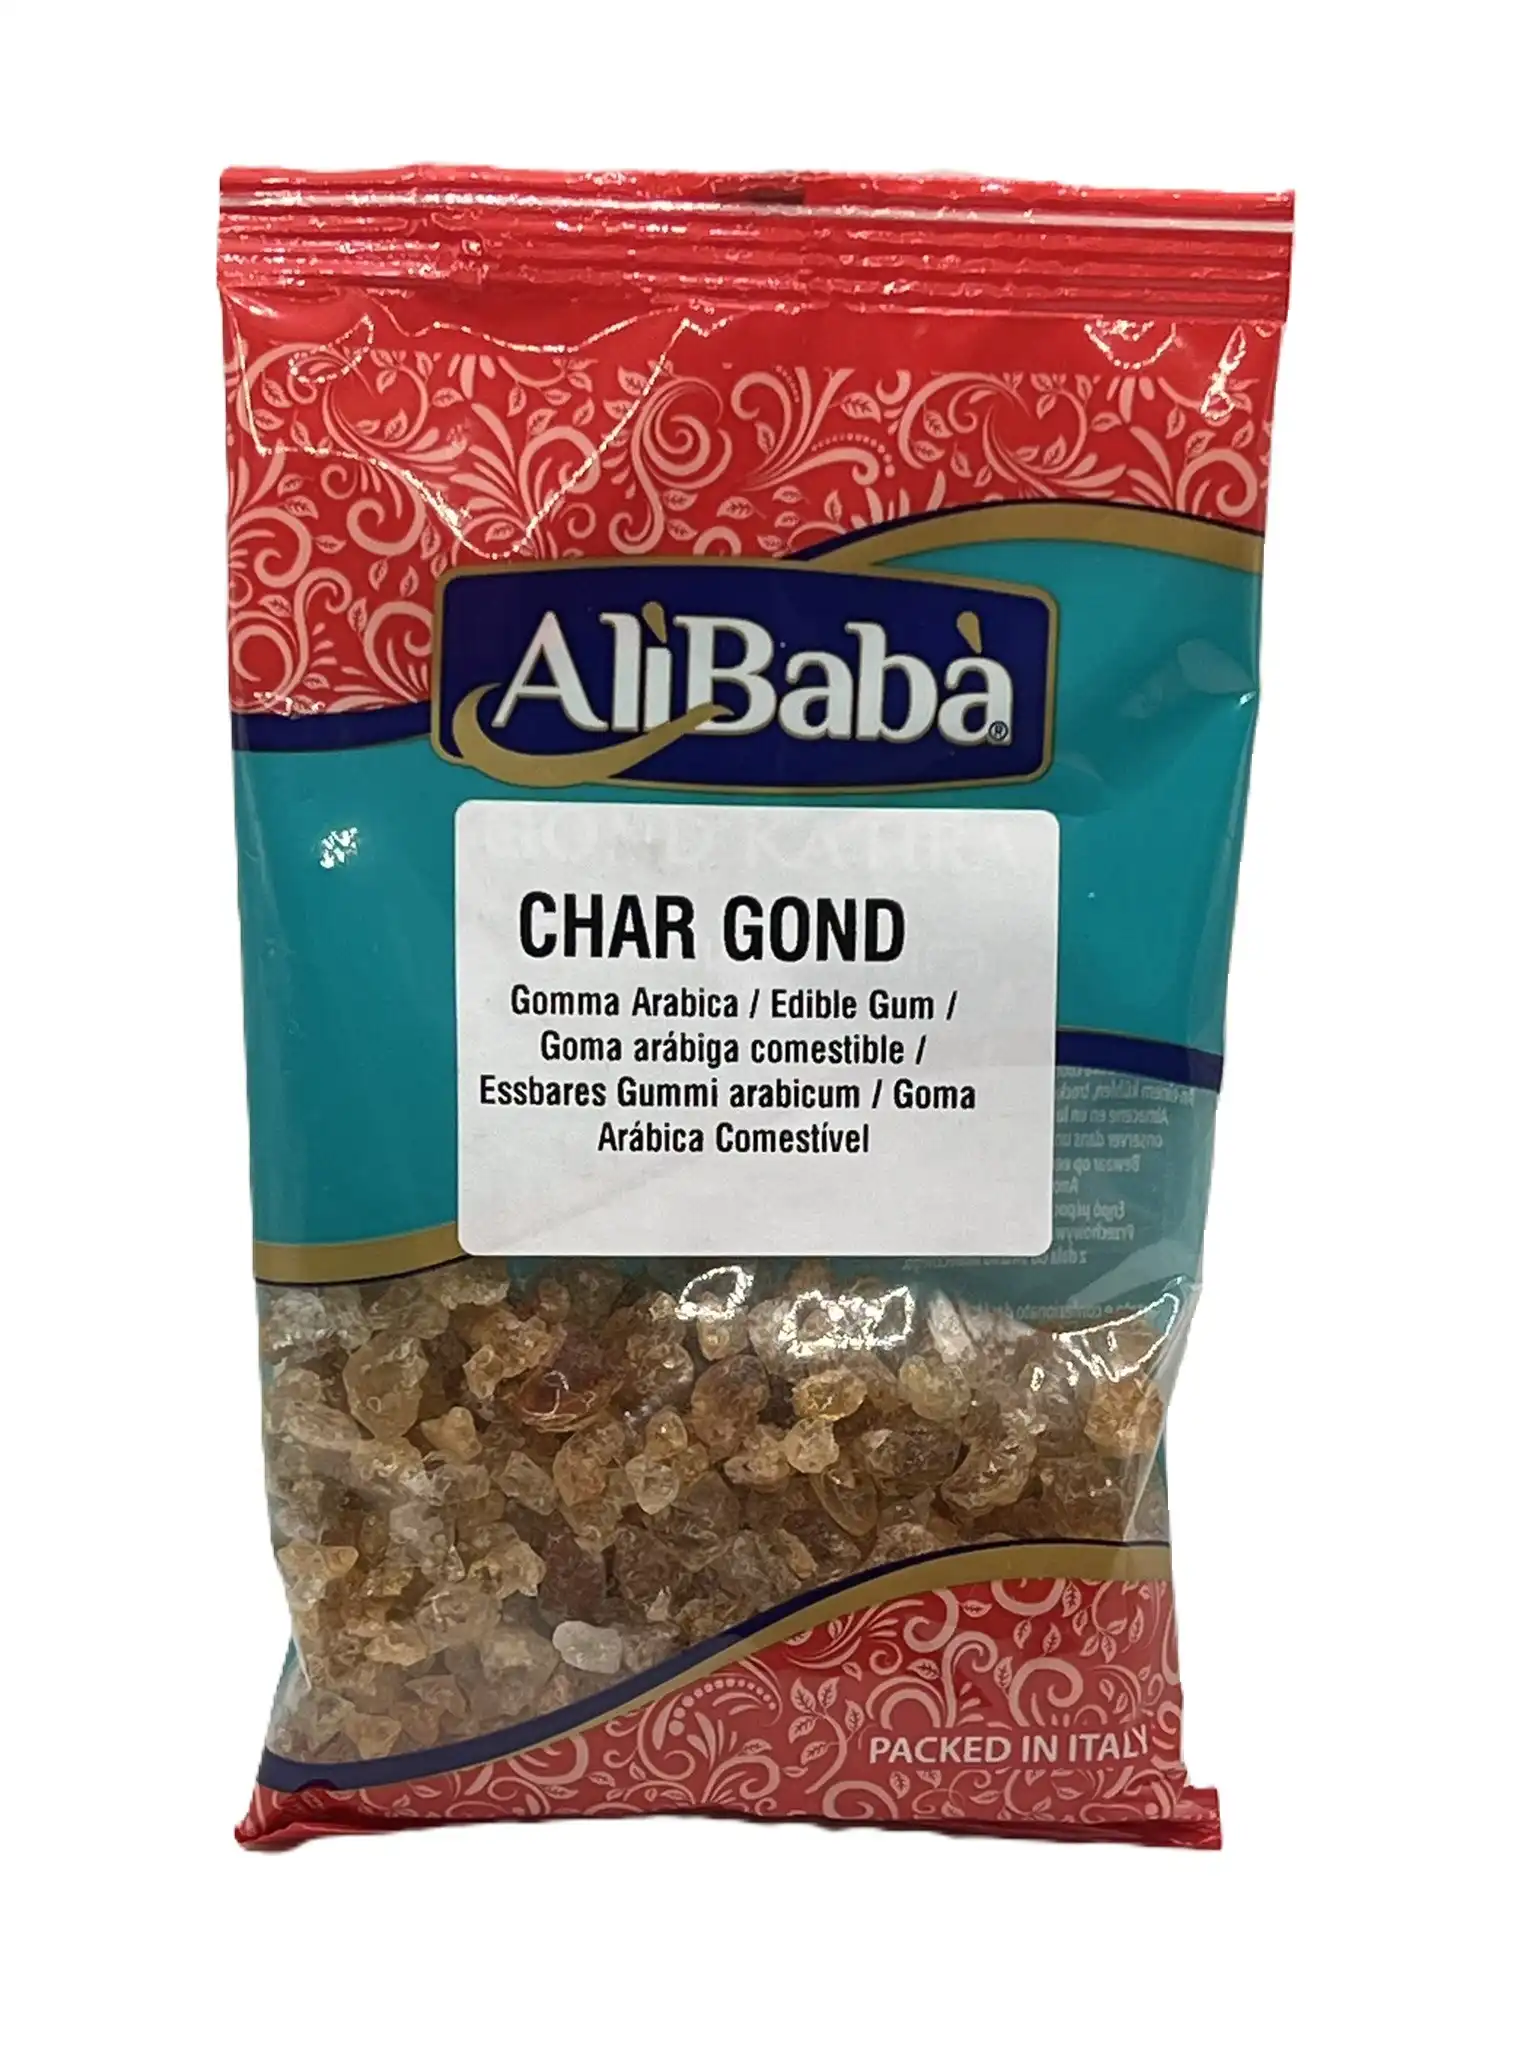 char gond/ gomma arabica/ edible gum-alibaba